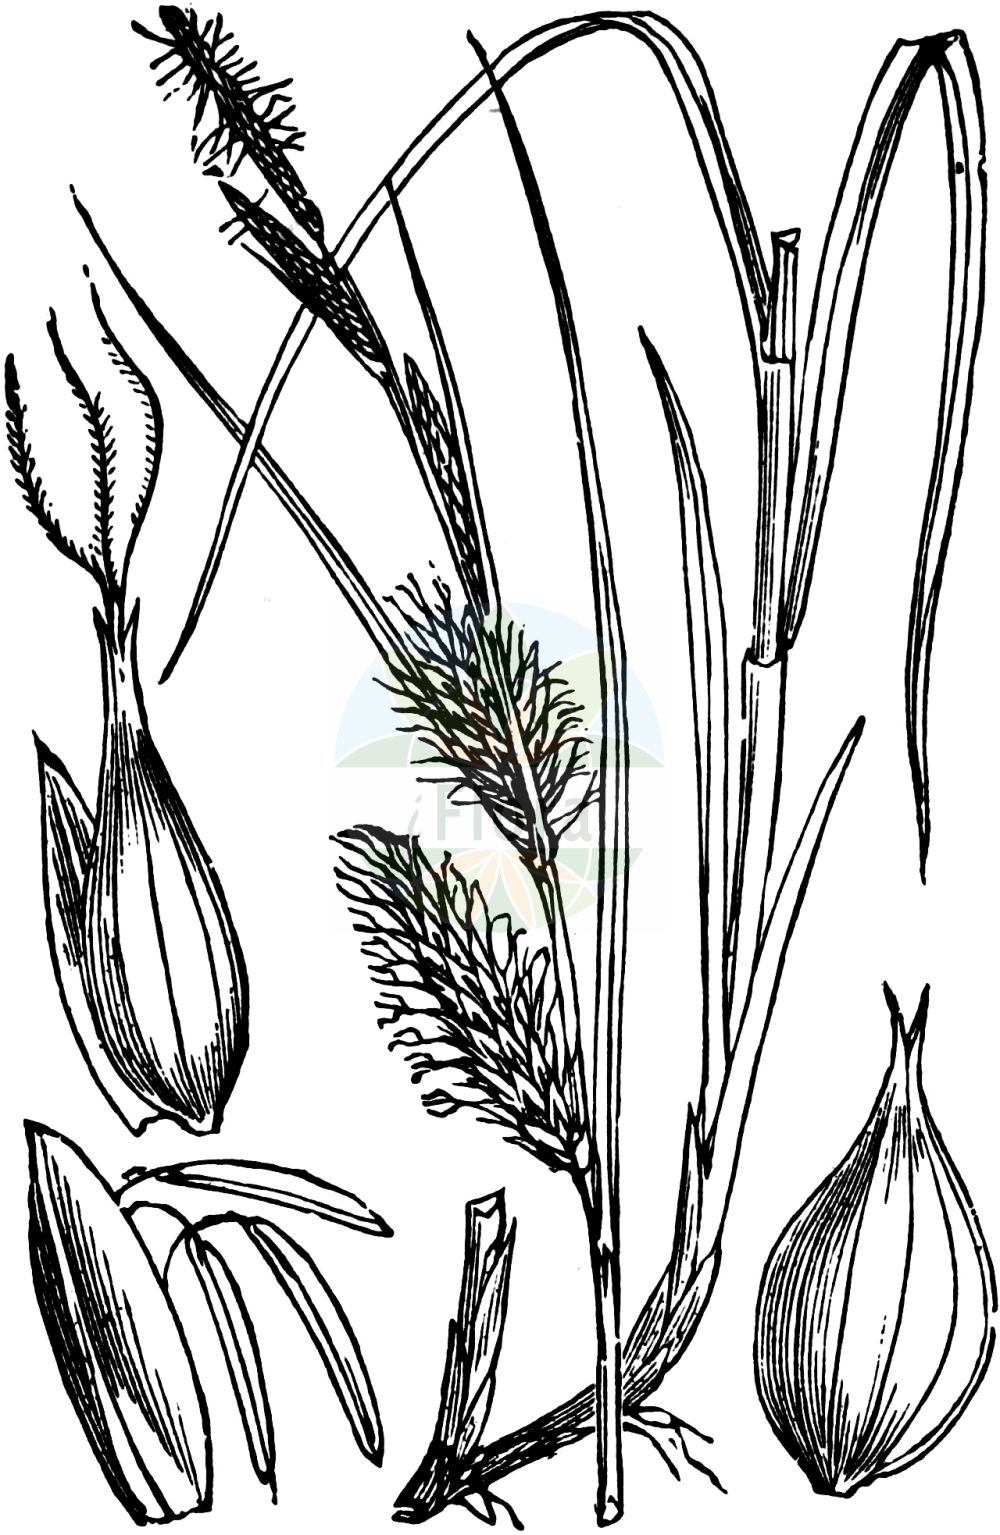 Historische Abbildung von Carex vesicaria (Blasen-Segge - Bladder-Sedge). Das Bild zeigt Blatt, Bluete, Frucht und Same. ---- Historical Drawing of Carex vesicaria (Blasen-Segge - Bladder-Sedge). The image is showing leaf, flower, fruit and seed.(Carex vesicaria,Blasen-Segge,Bladder-Sedge,Carex vesicaria,Blasen-Segge,Bastard-Blasen-Segge,Bladder-Sedge,Blister Sedge,Carex,Segge,Sedge,Cyperaceae,Sauergräser,Sedge family,Blatt,Bluete,Frucht,Same,leaf,flower,fruit,seed,Fitch et al. (1880))